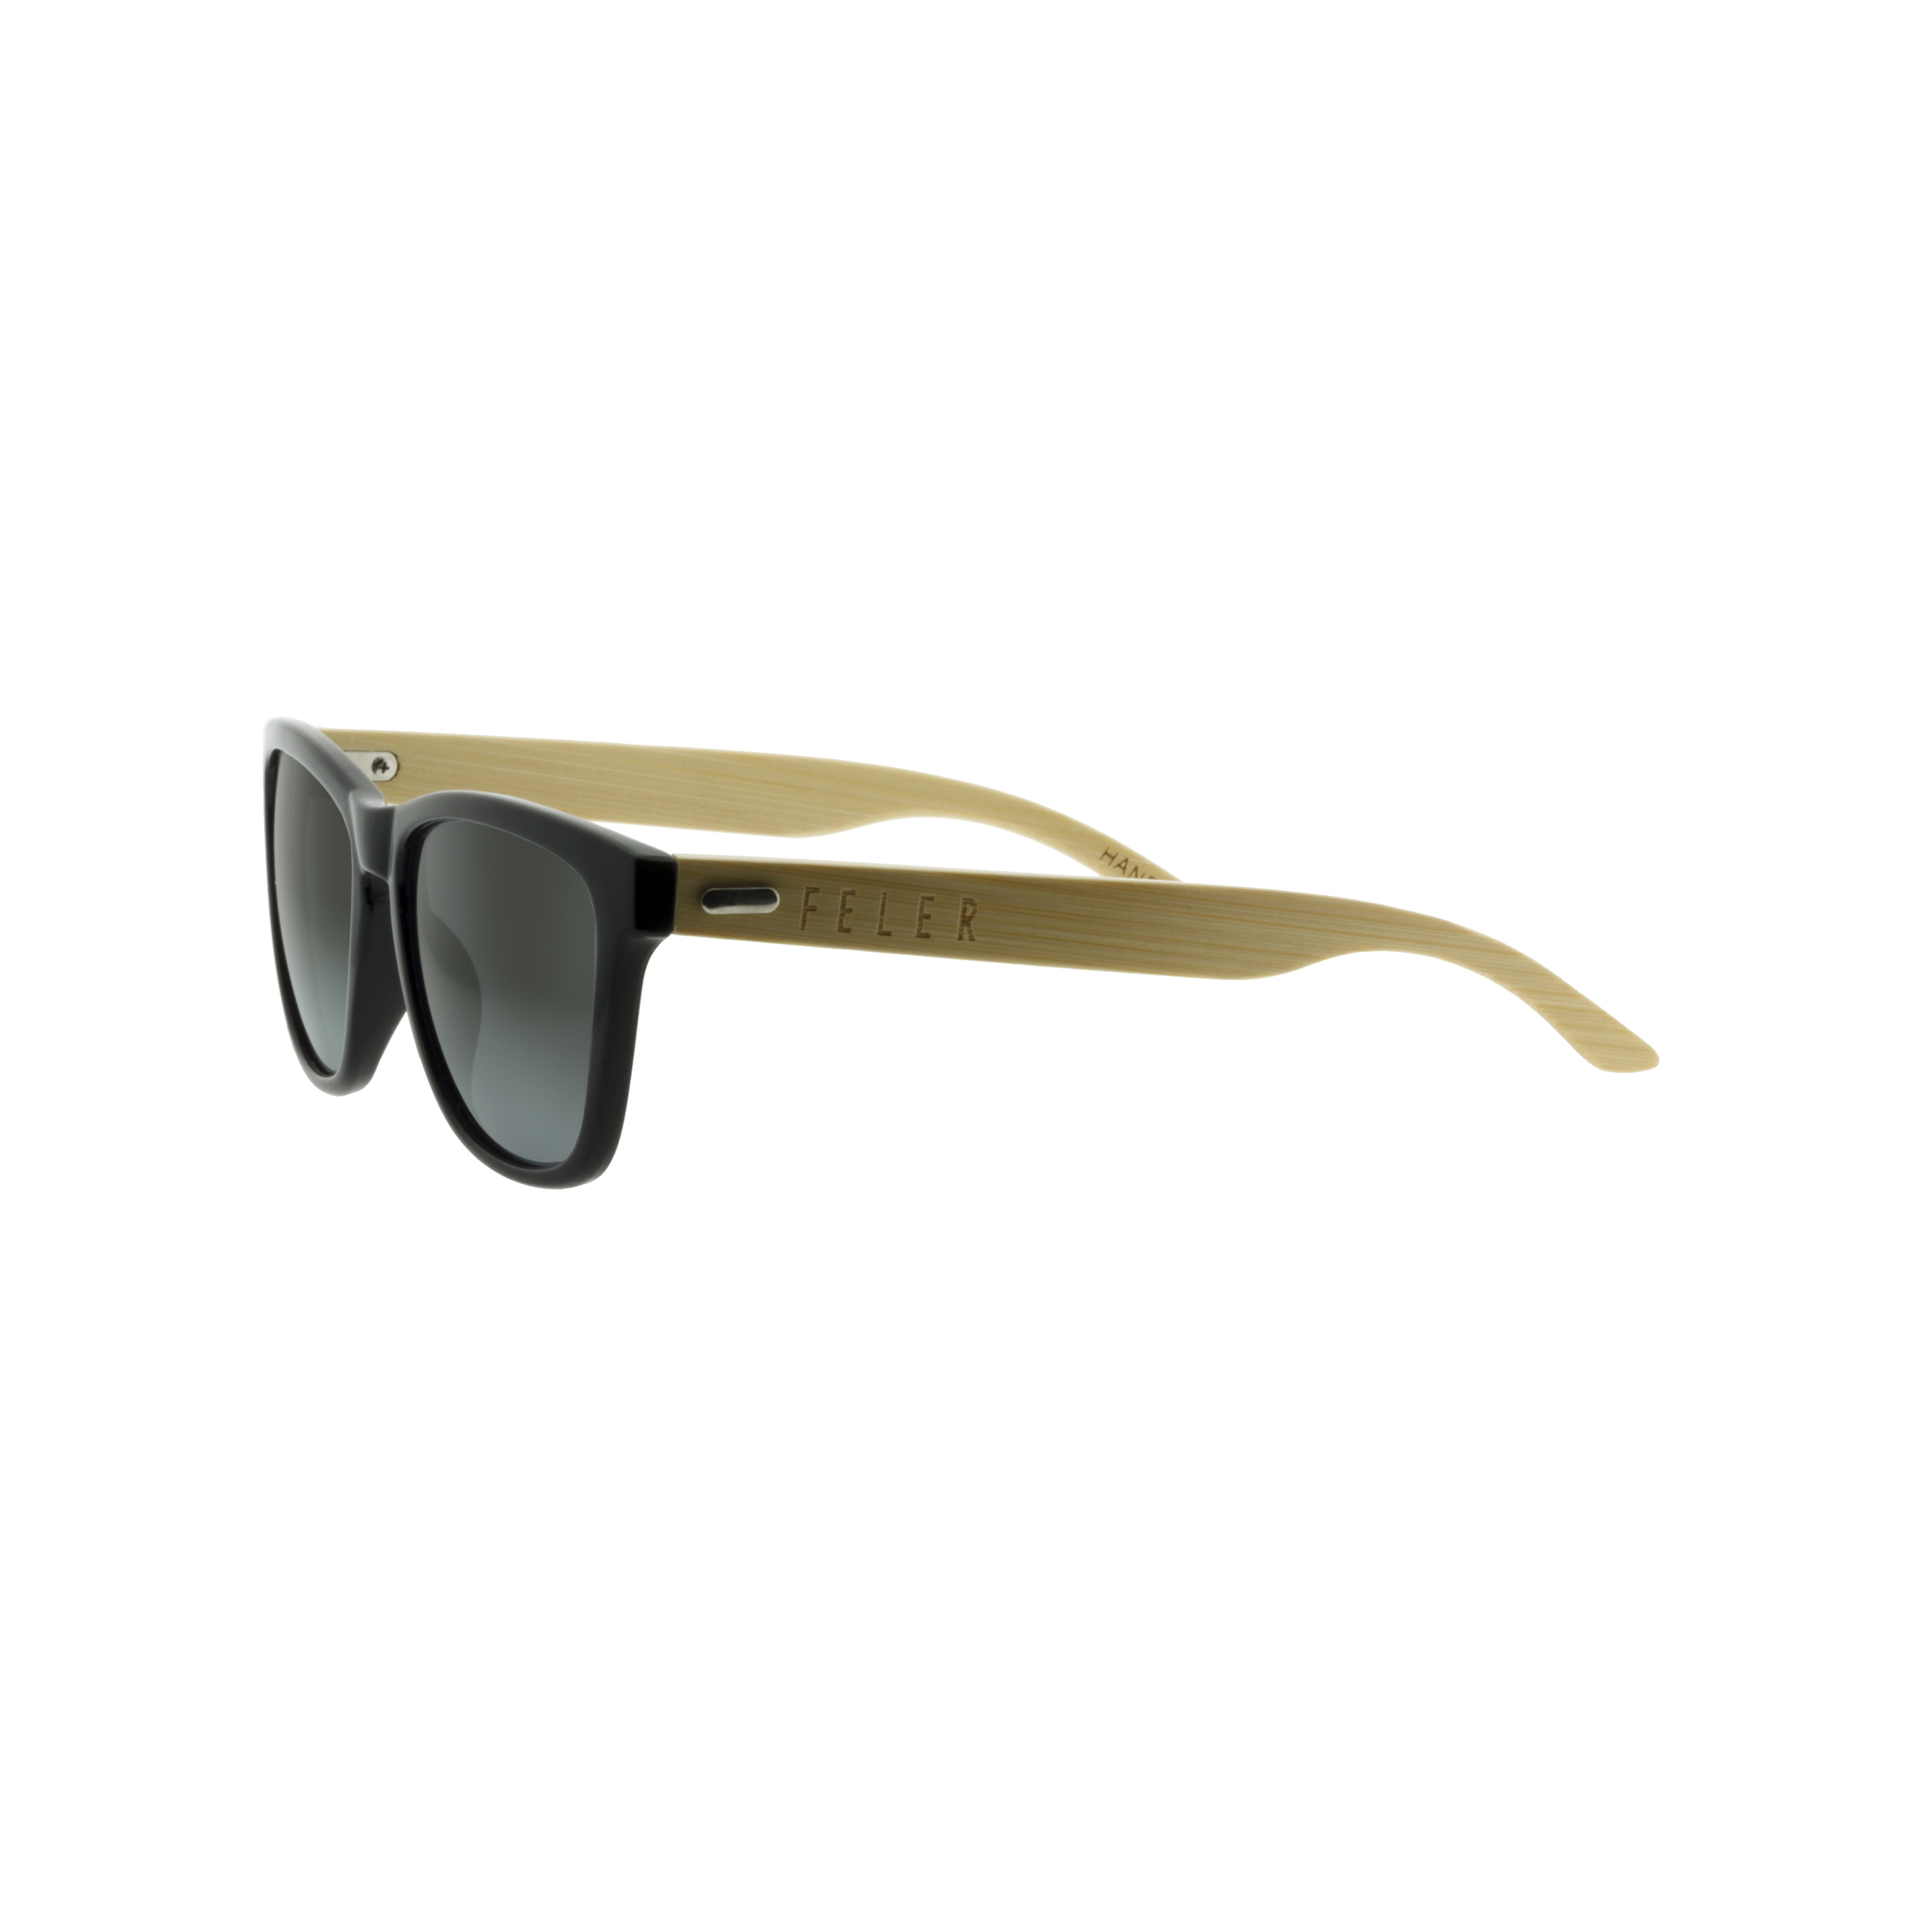 Gafas De Sol Feler | Regular Hibrid 3 - Negro - Cuadrada  MKP